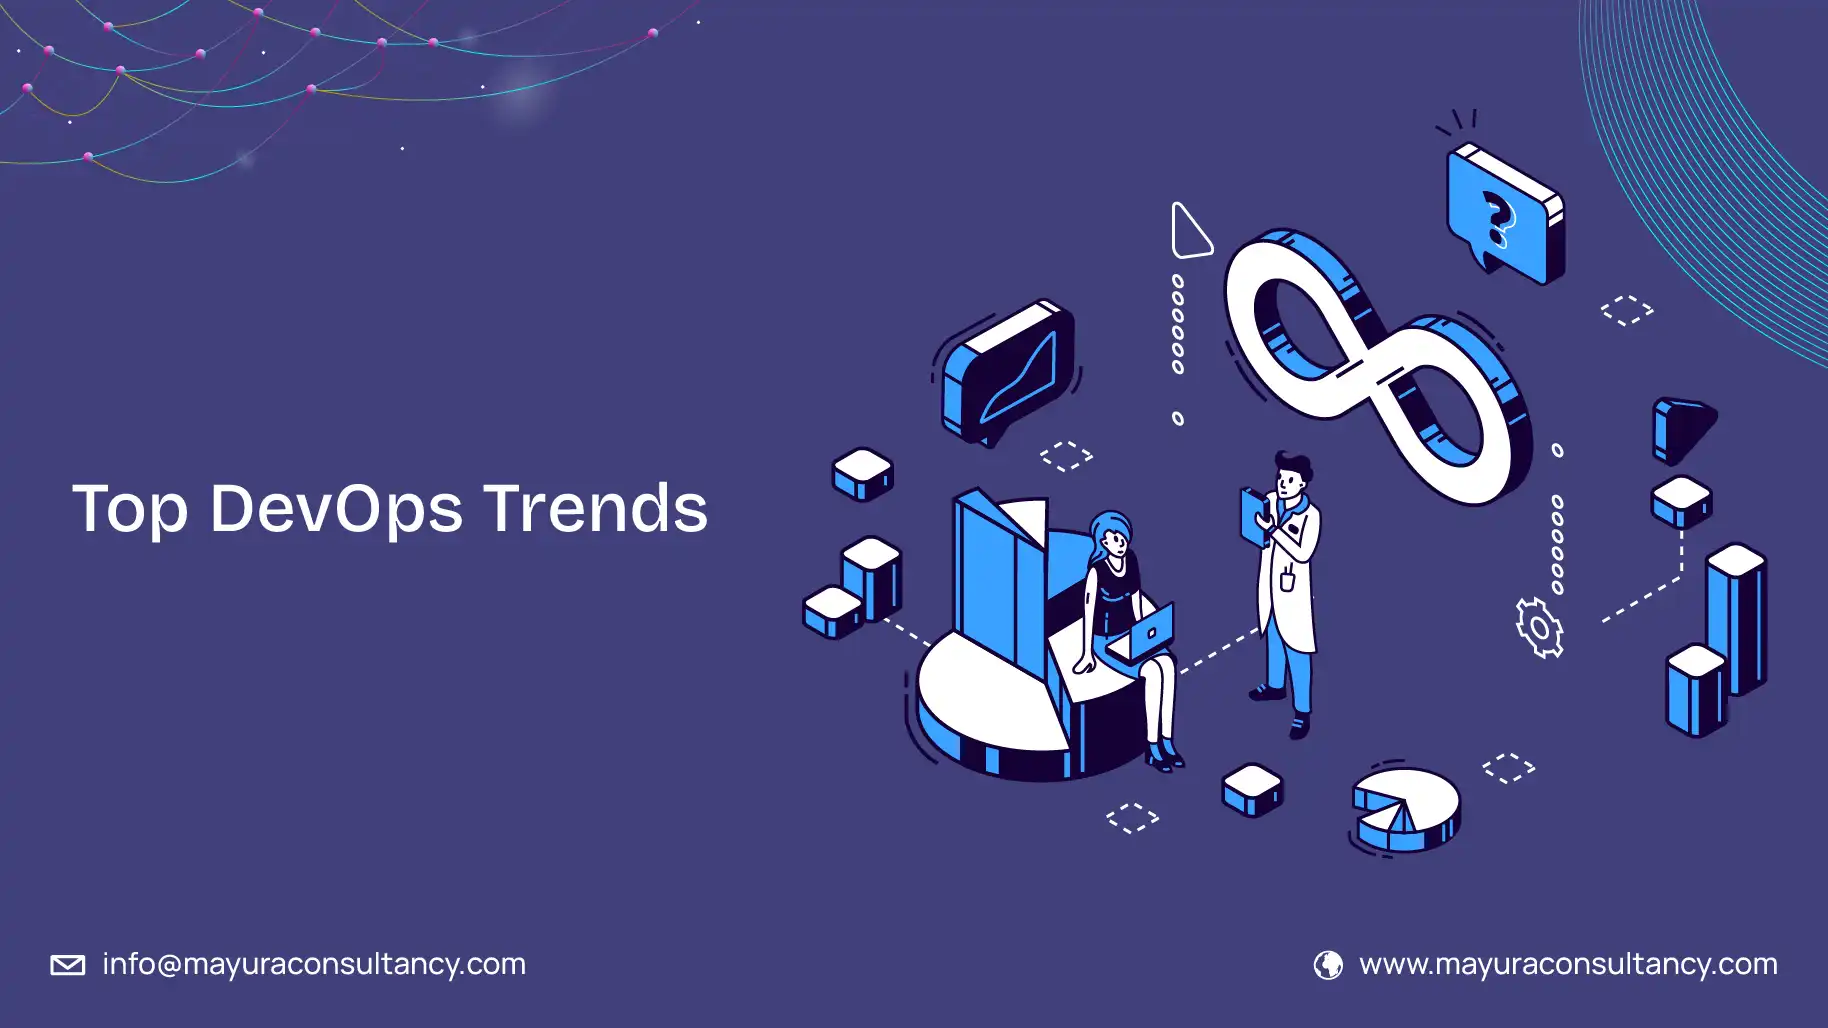 Top DevOps Trends